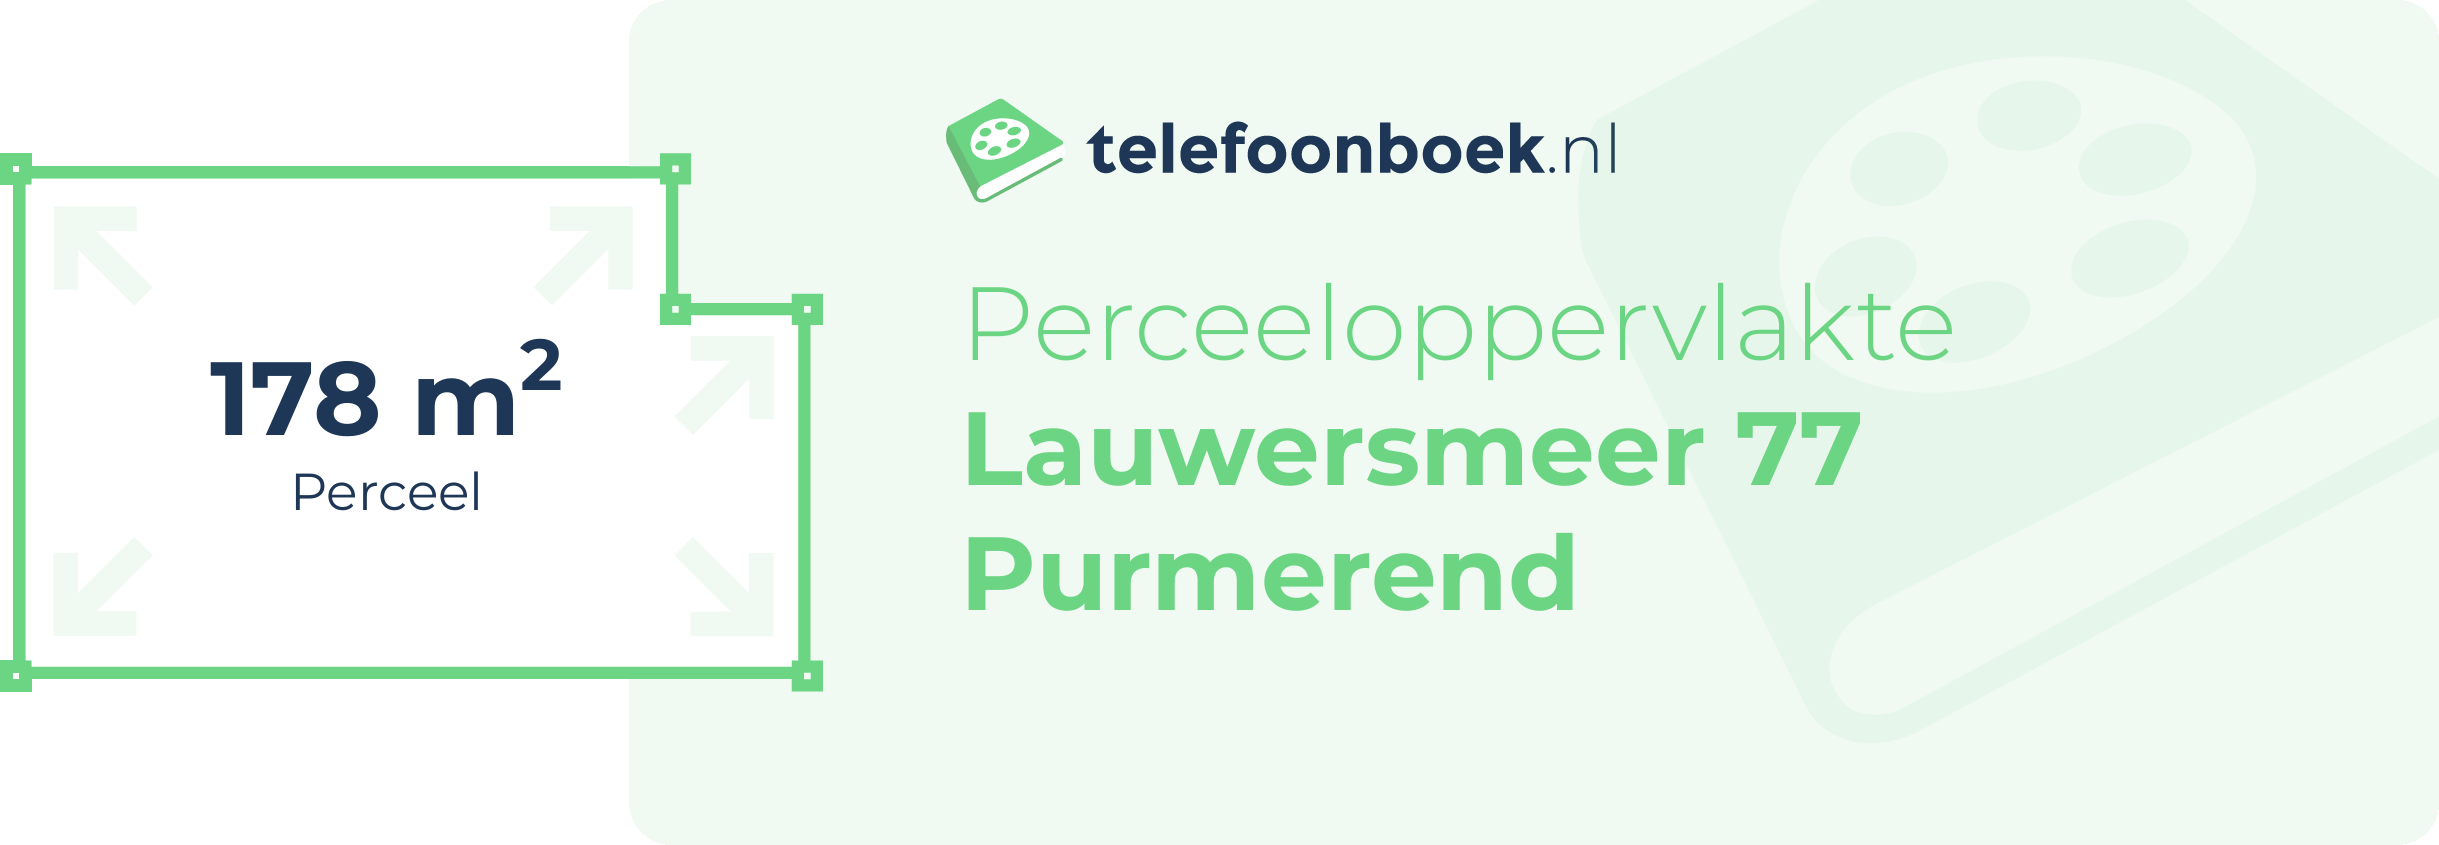 Perceeloppervlakte Lauwersmeer 77 Purmerend